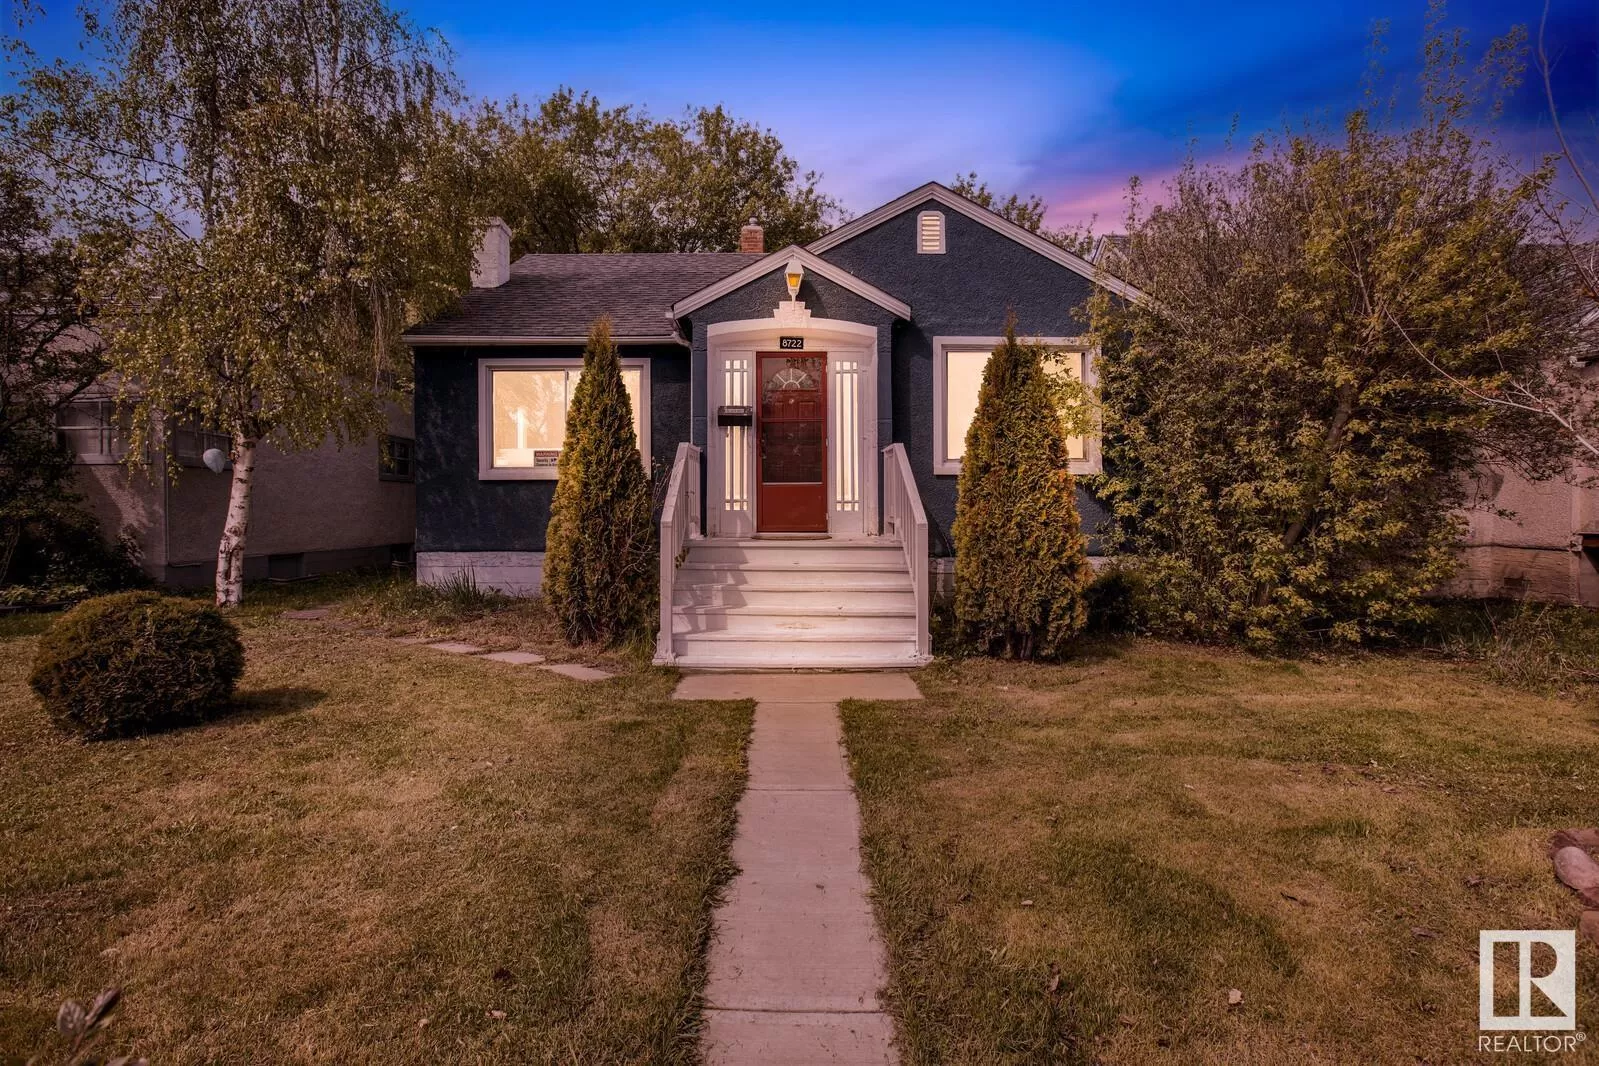 House for rent: 8722 112 Av Nw, Edmonton, Alberta T5B 0G6